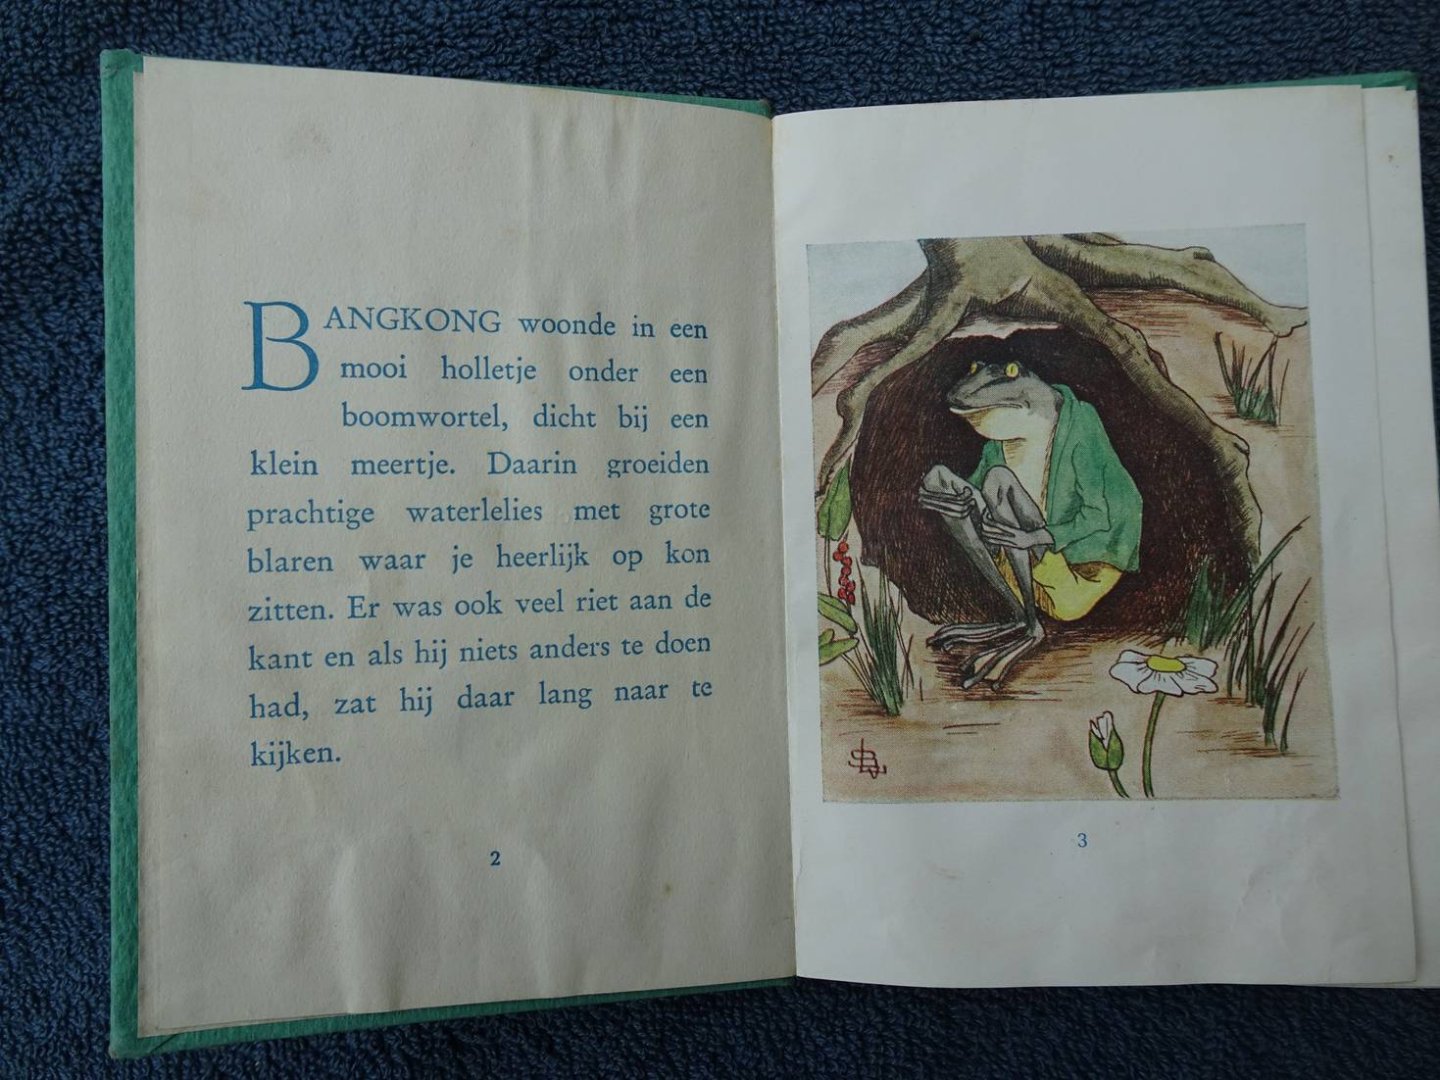 Suchtelen-Leembruggen, L. van. - Het Kikkerboekje. De Geschiedenis van Kodok Bangkong.